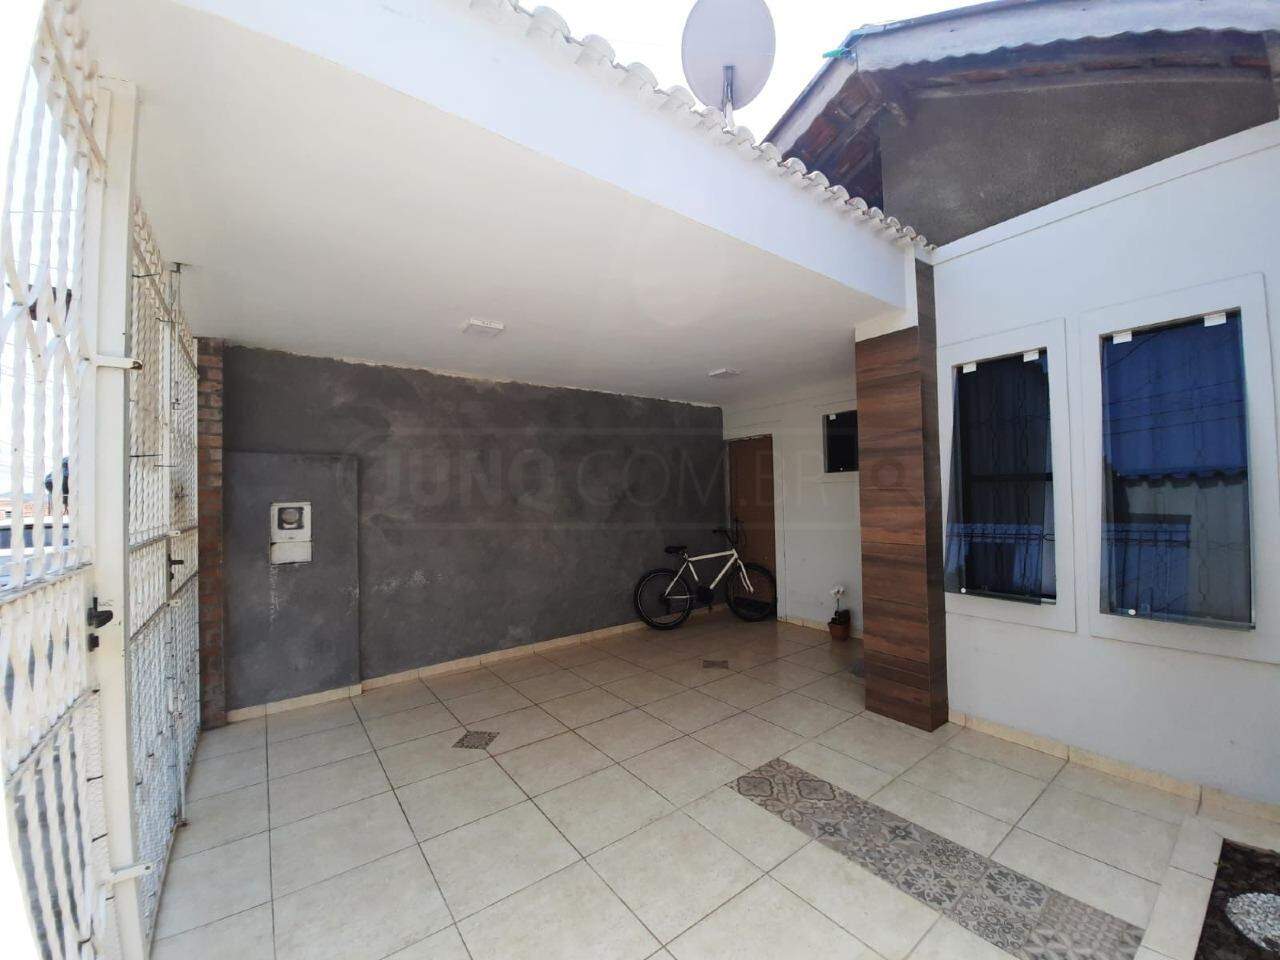 Casa à venda, 2 quartos, 1 vaga, no bairro Vila Industrial em Piracicaba - SP